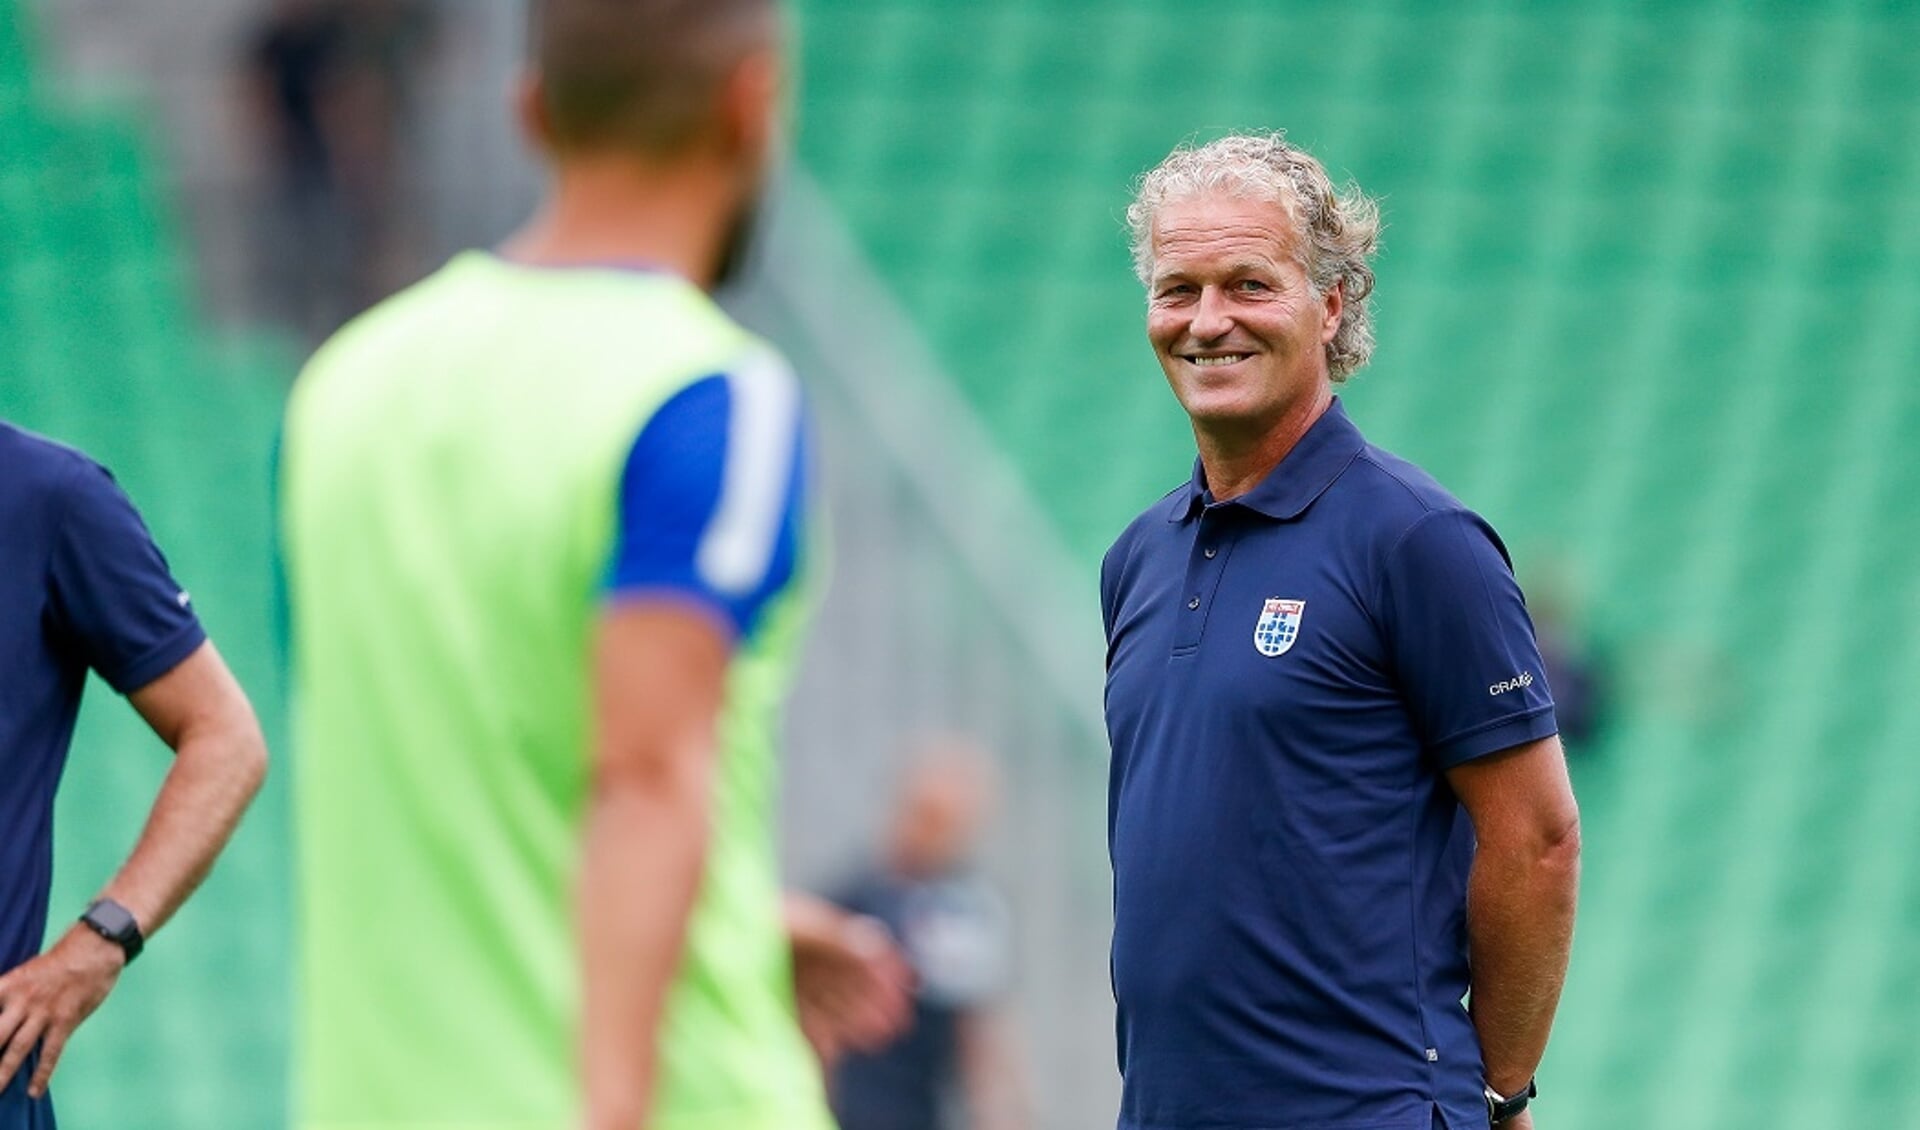 Gert Peter de Gunst behoort tot het meubilair van PEC Zwolle, maar vertrekt na dit seizoen.